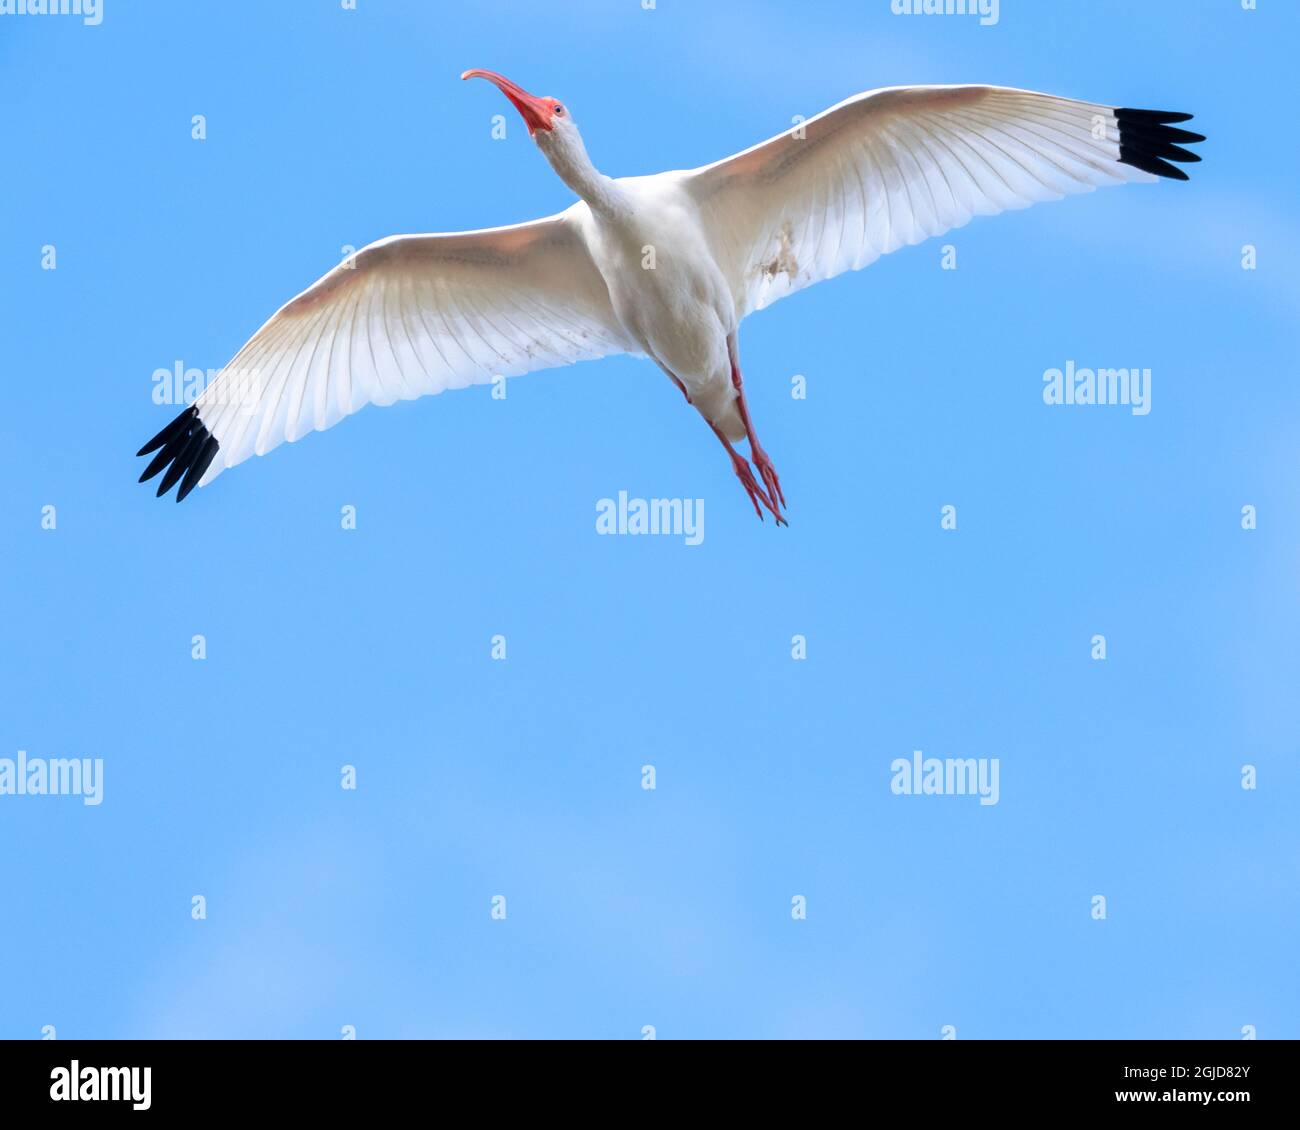 Un Ibis blanco, volando con alas abiertas y puntas negras Foto de stock